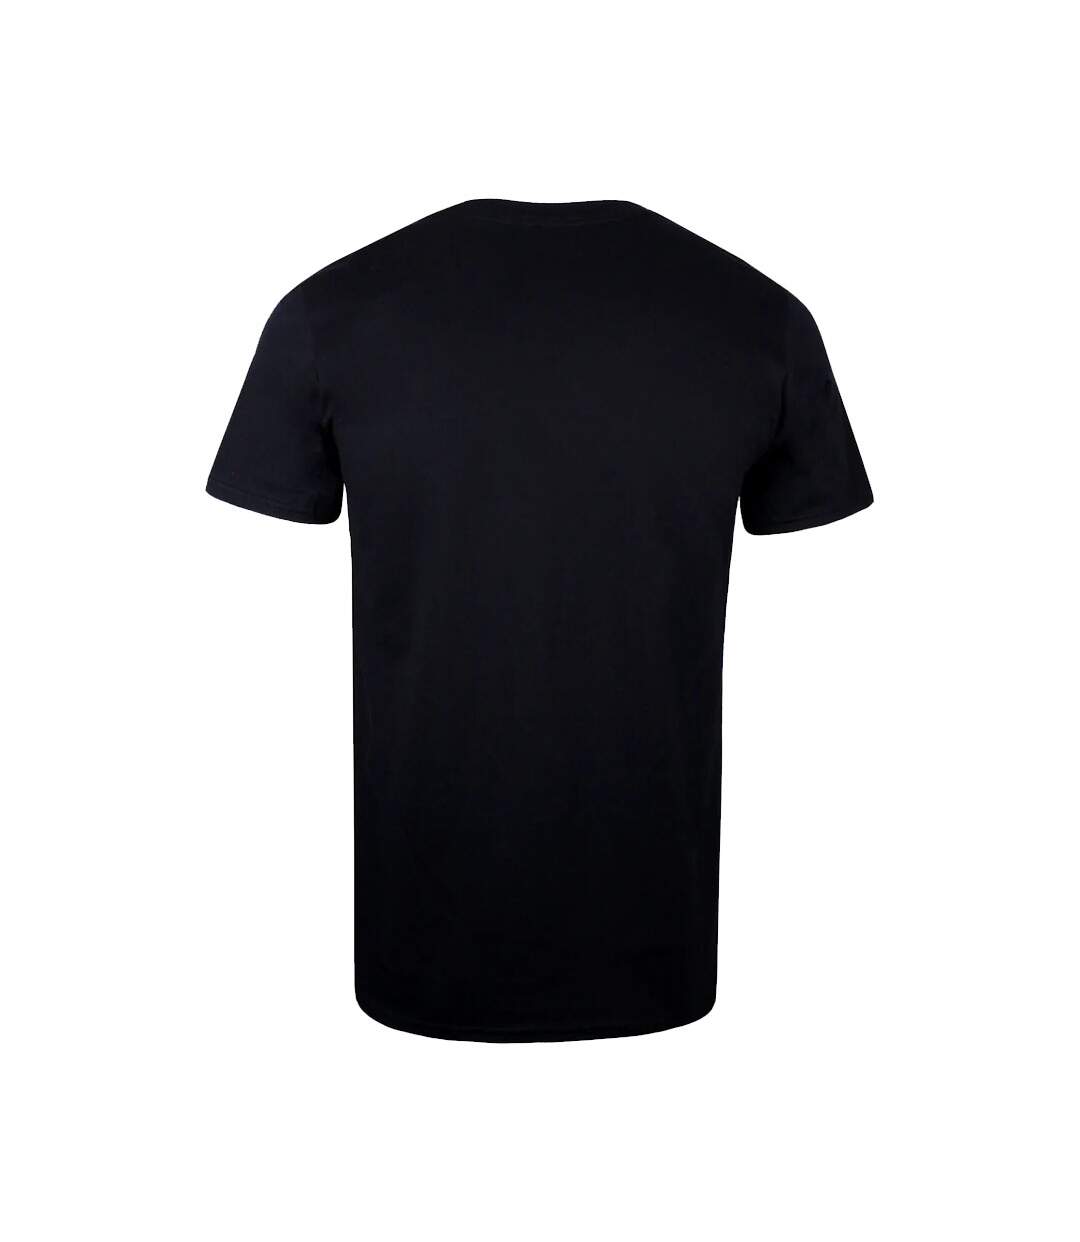 Batman - T-shirt - Homme (Noir) - UTTV1160